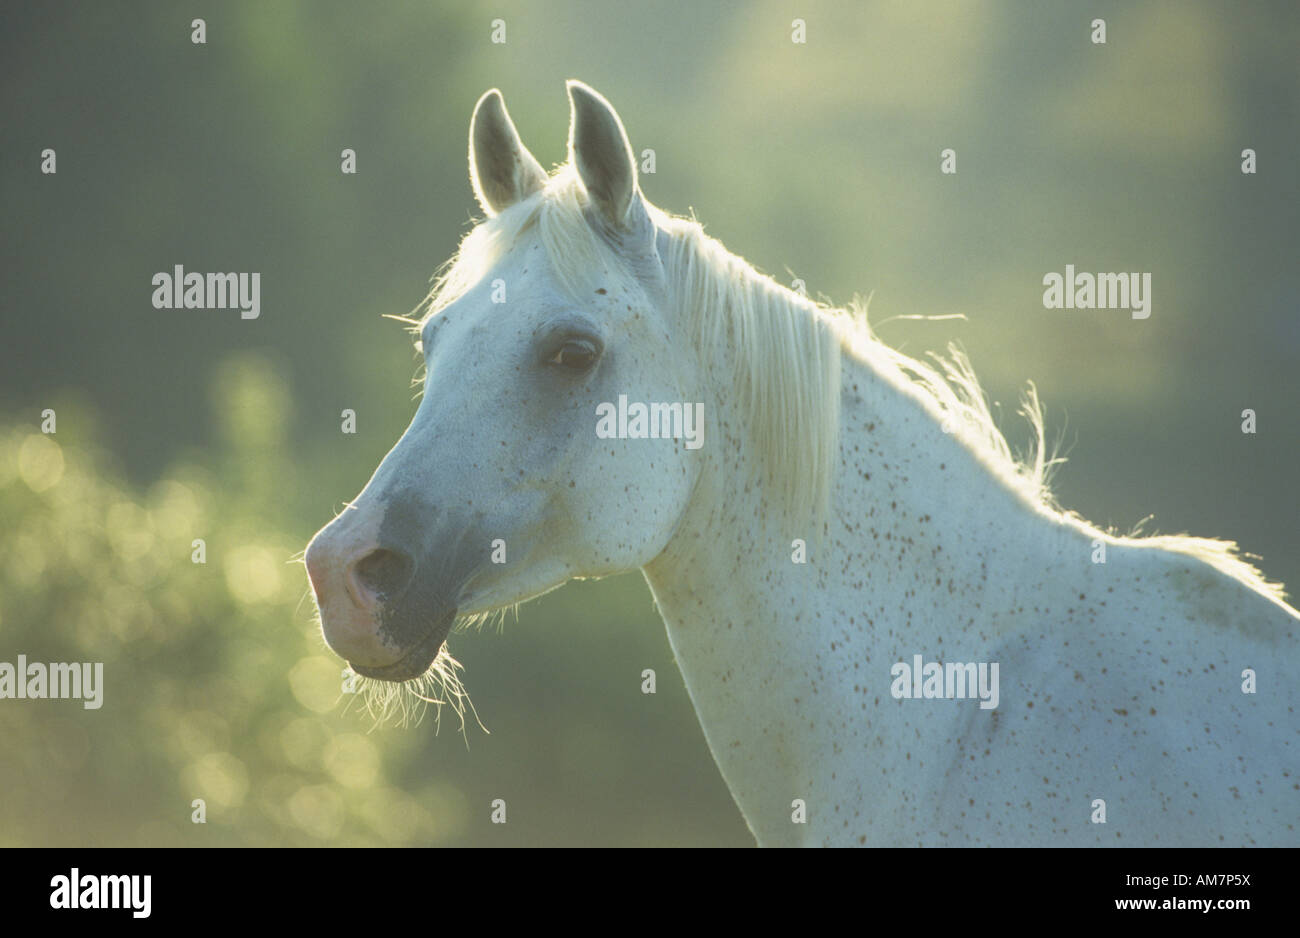 Arabian Horse (Equus caballus), portrait of mare Stock Photo